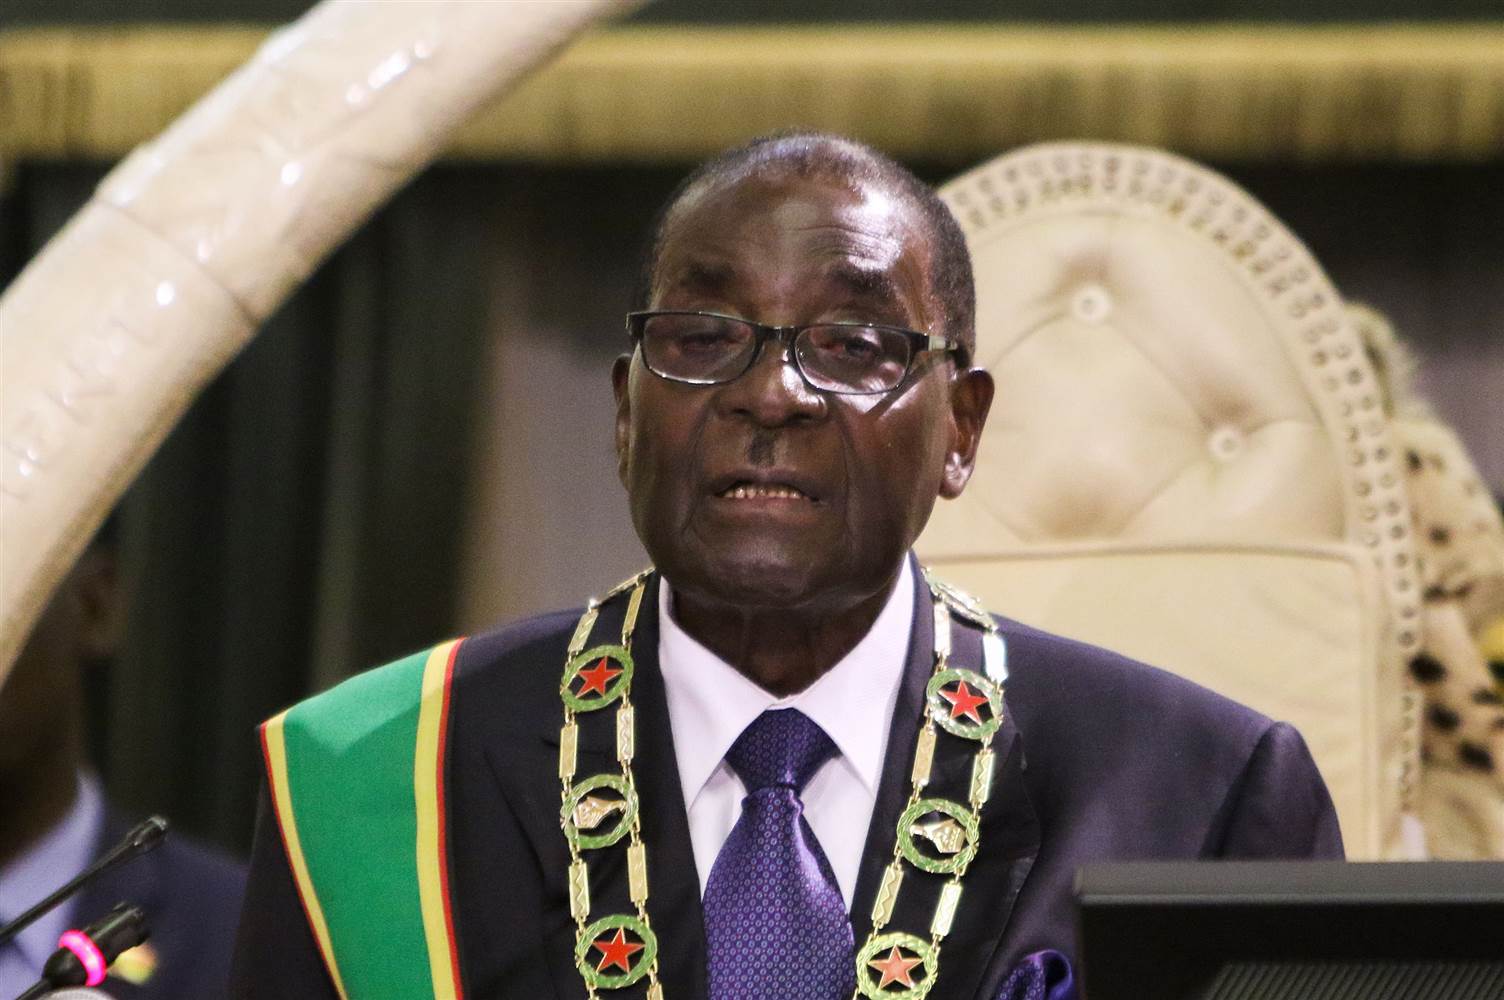 Robert Mugabe - Zimbabwe (36 Years)